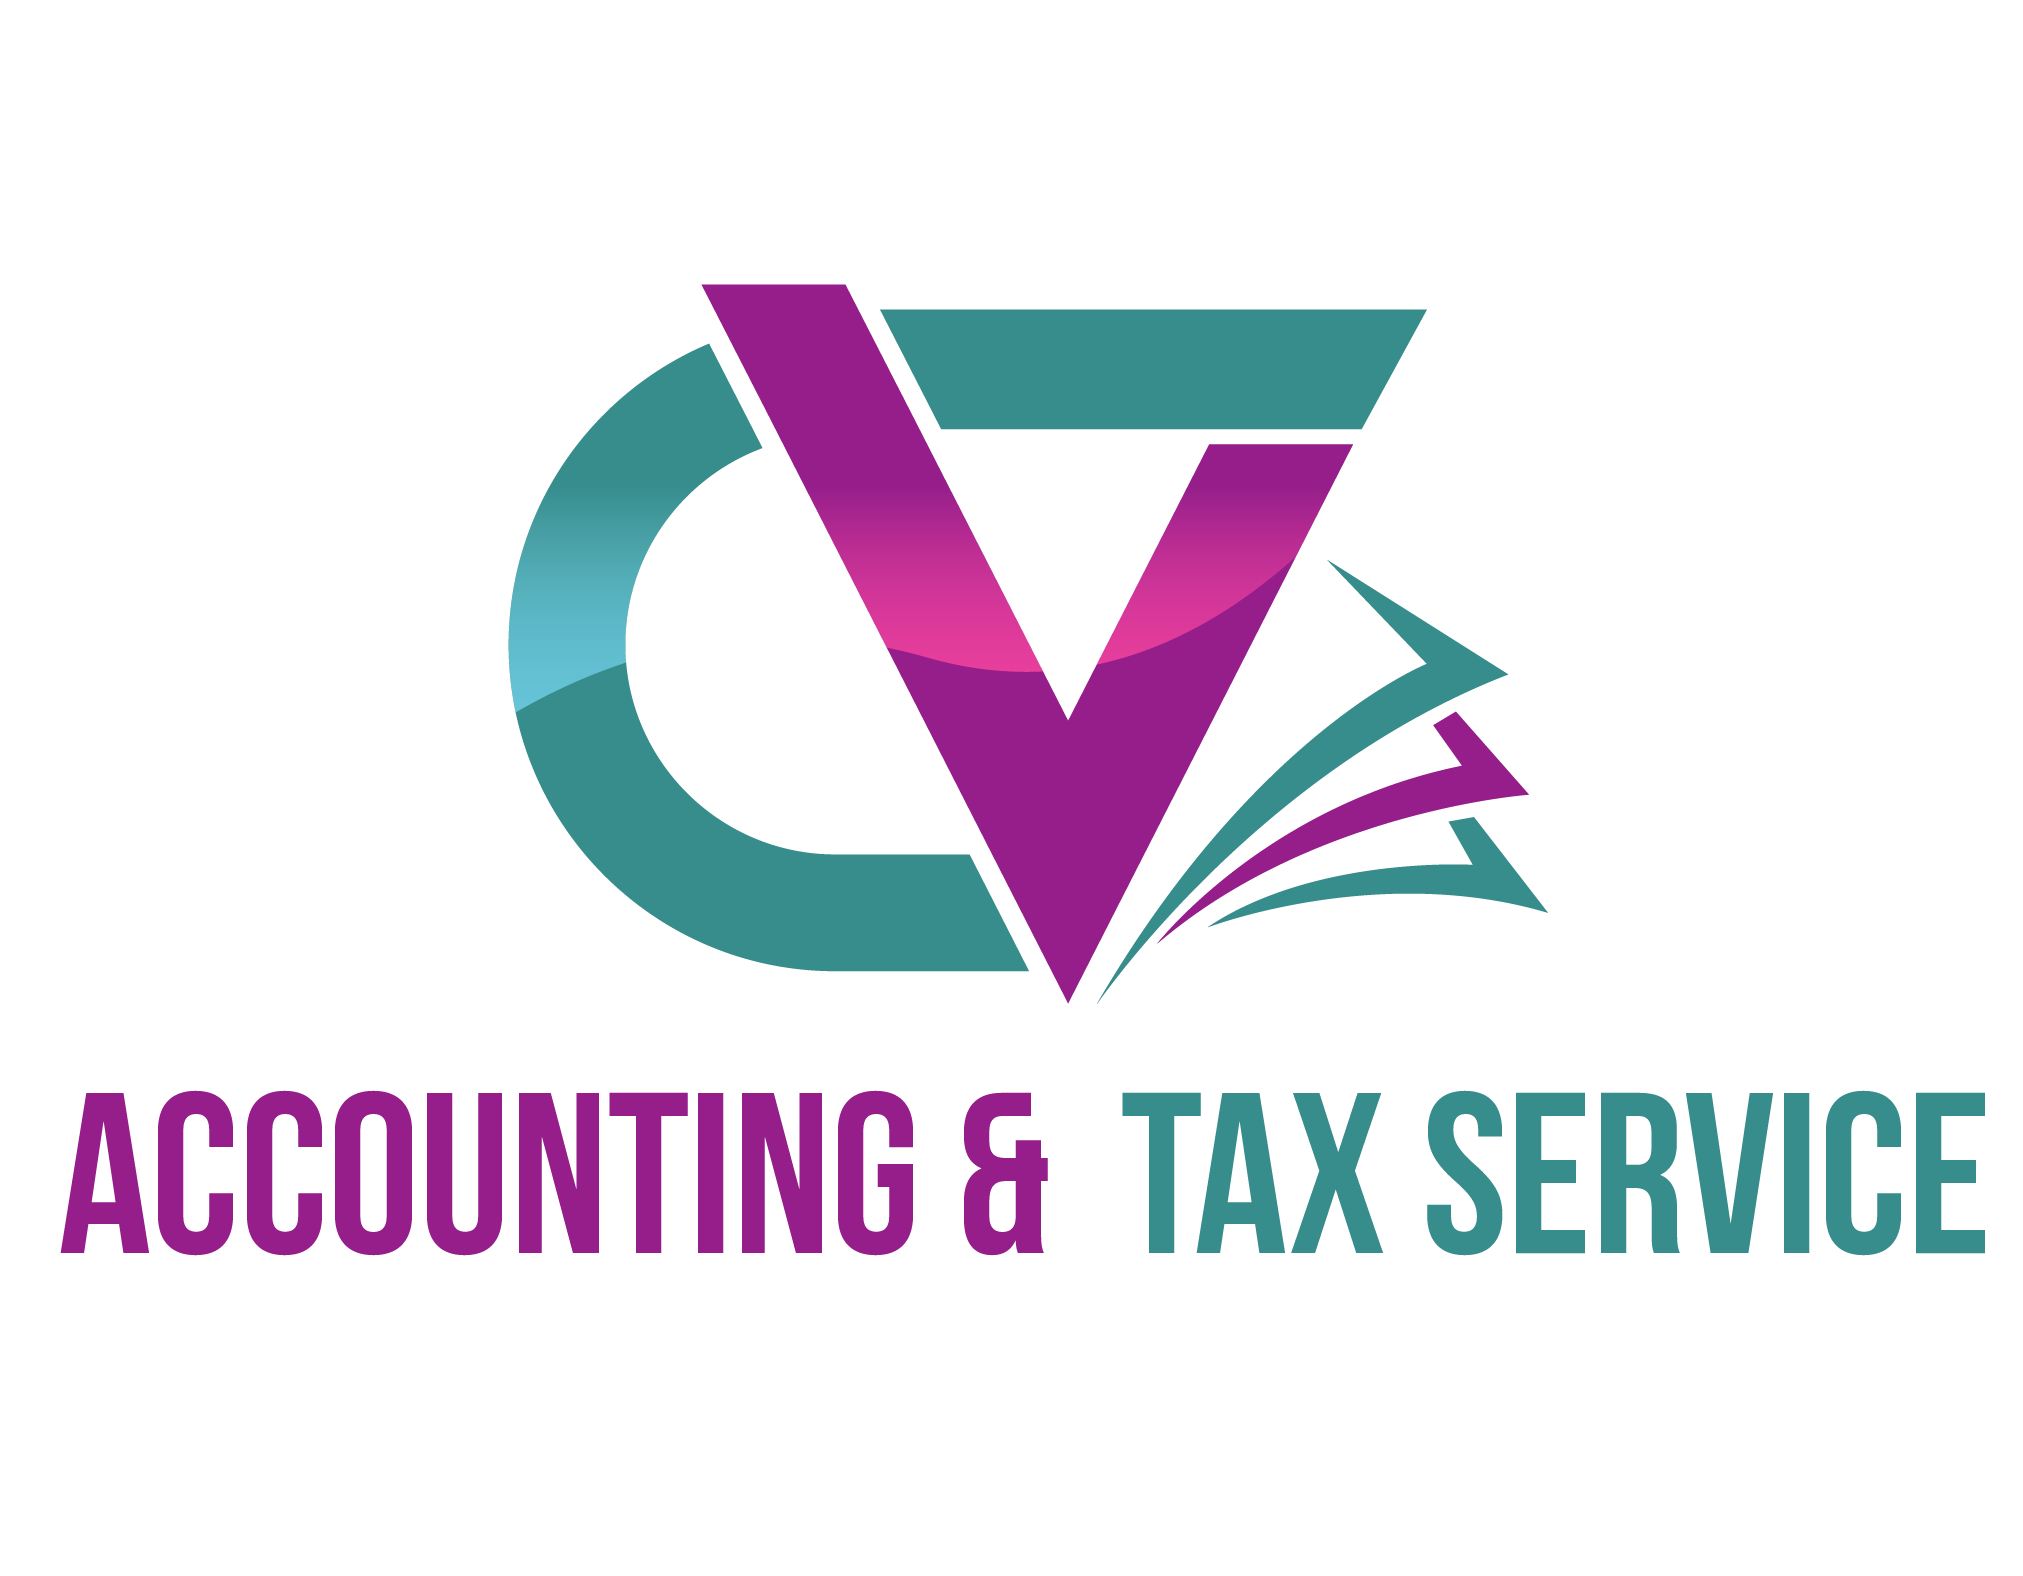 CV Accounting Tax